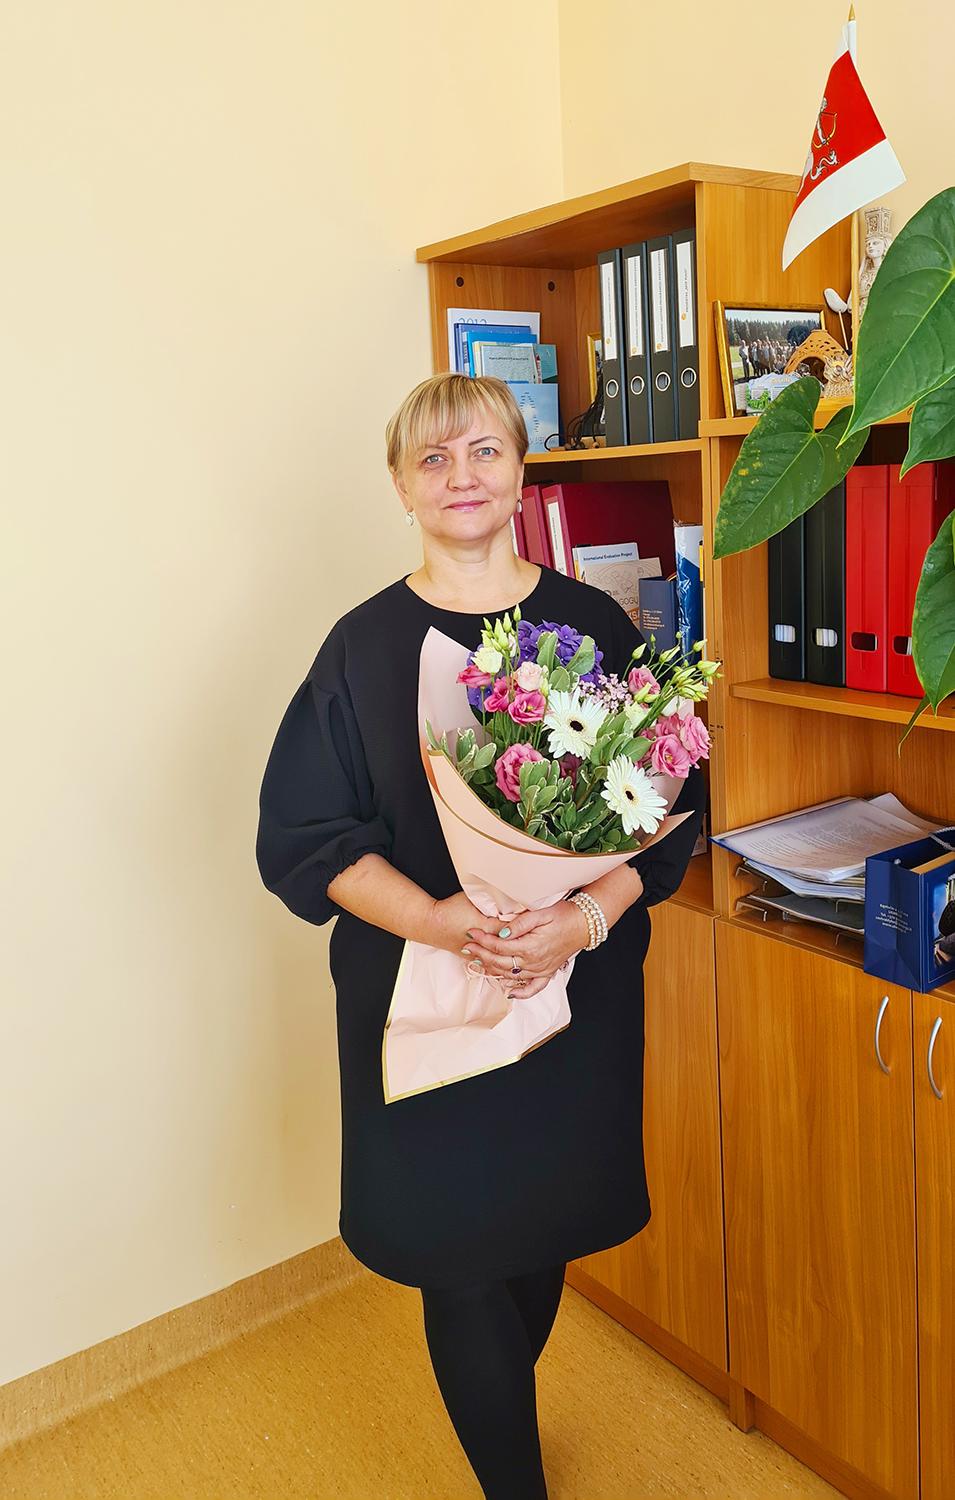 Siesikų gimnazija turi naują direktorę / Nuo spalio 29 d. Siesikų gimnazijai pradėjo vadovauti Jolanta Ulkštinienė.Asmeninio albumo nuotr.